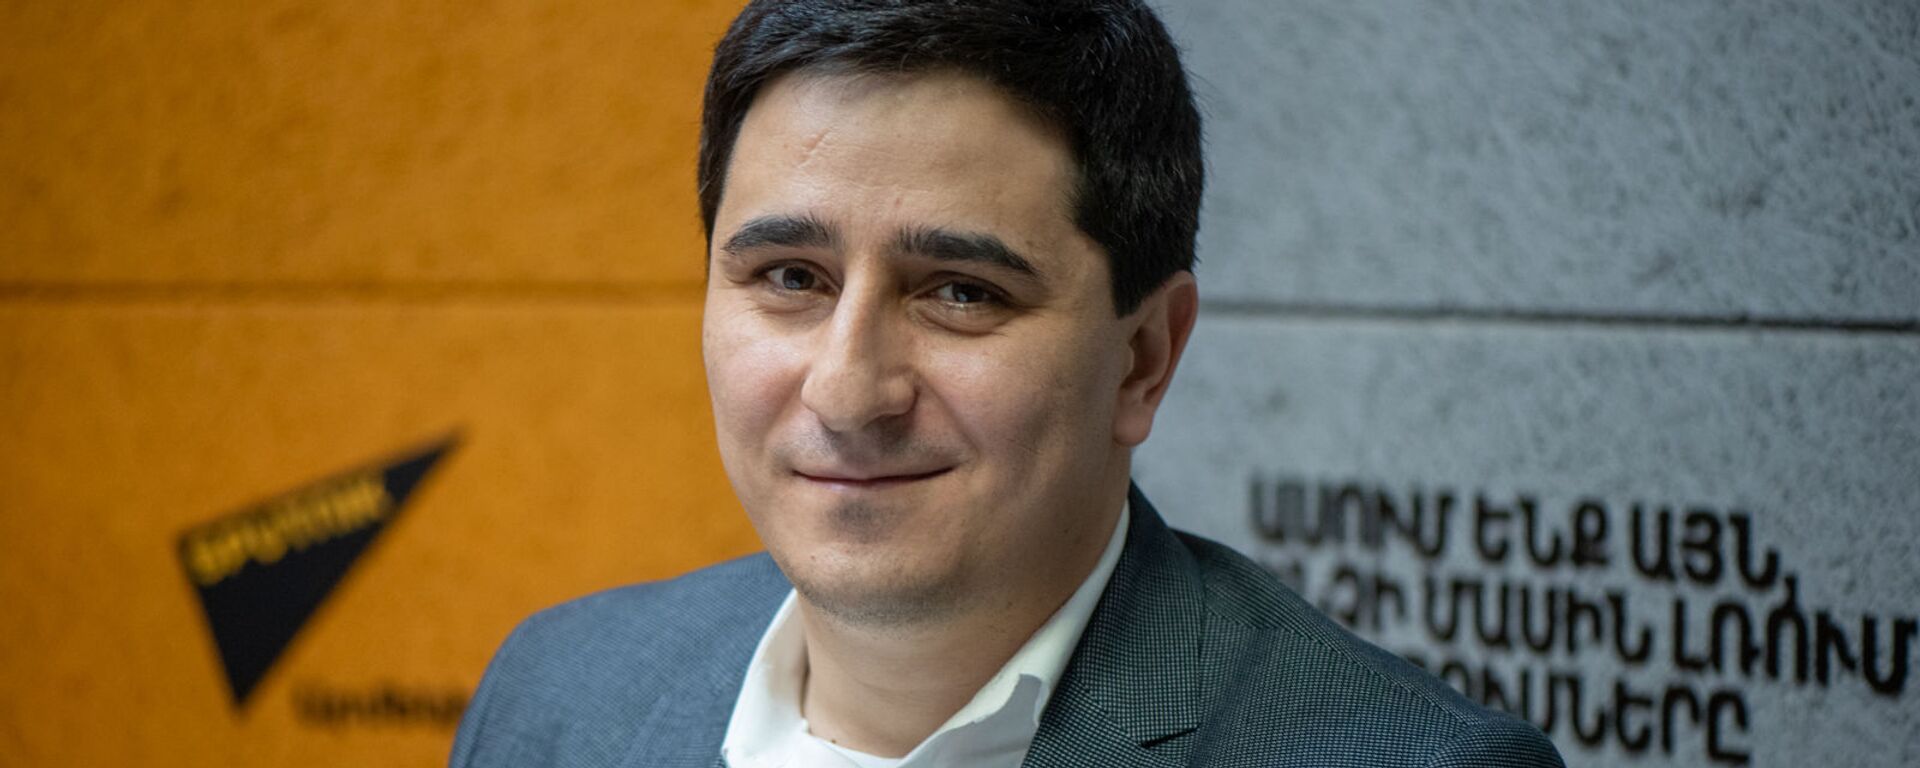 Представитель Армении в Европейском суде по правам человека Егише Киракосян в гостях радио Sputnik - Sputnik Армения, 1920, 16.12.2021